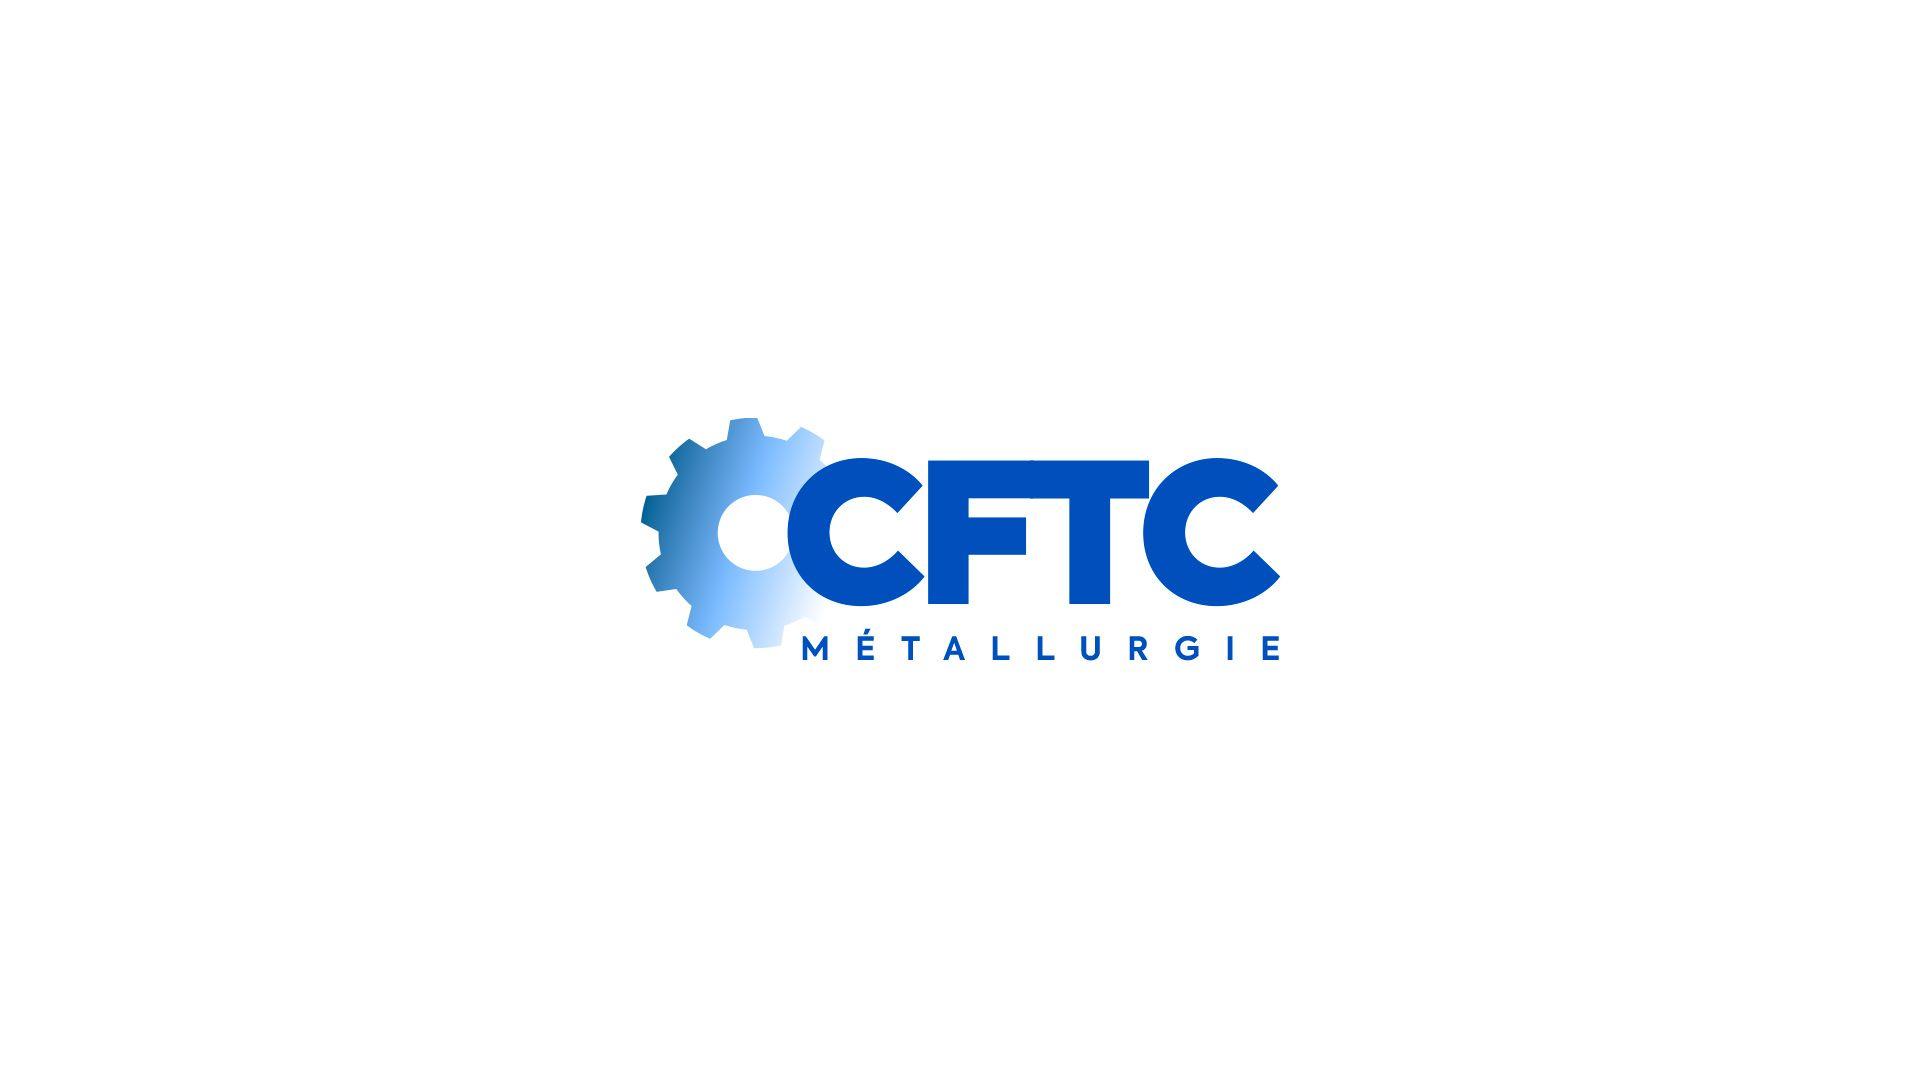 CFTC Logo - Nouveau logo de la CFTC Metallurgie – CFTC Métallurgie